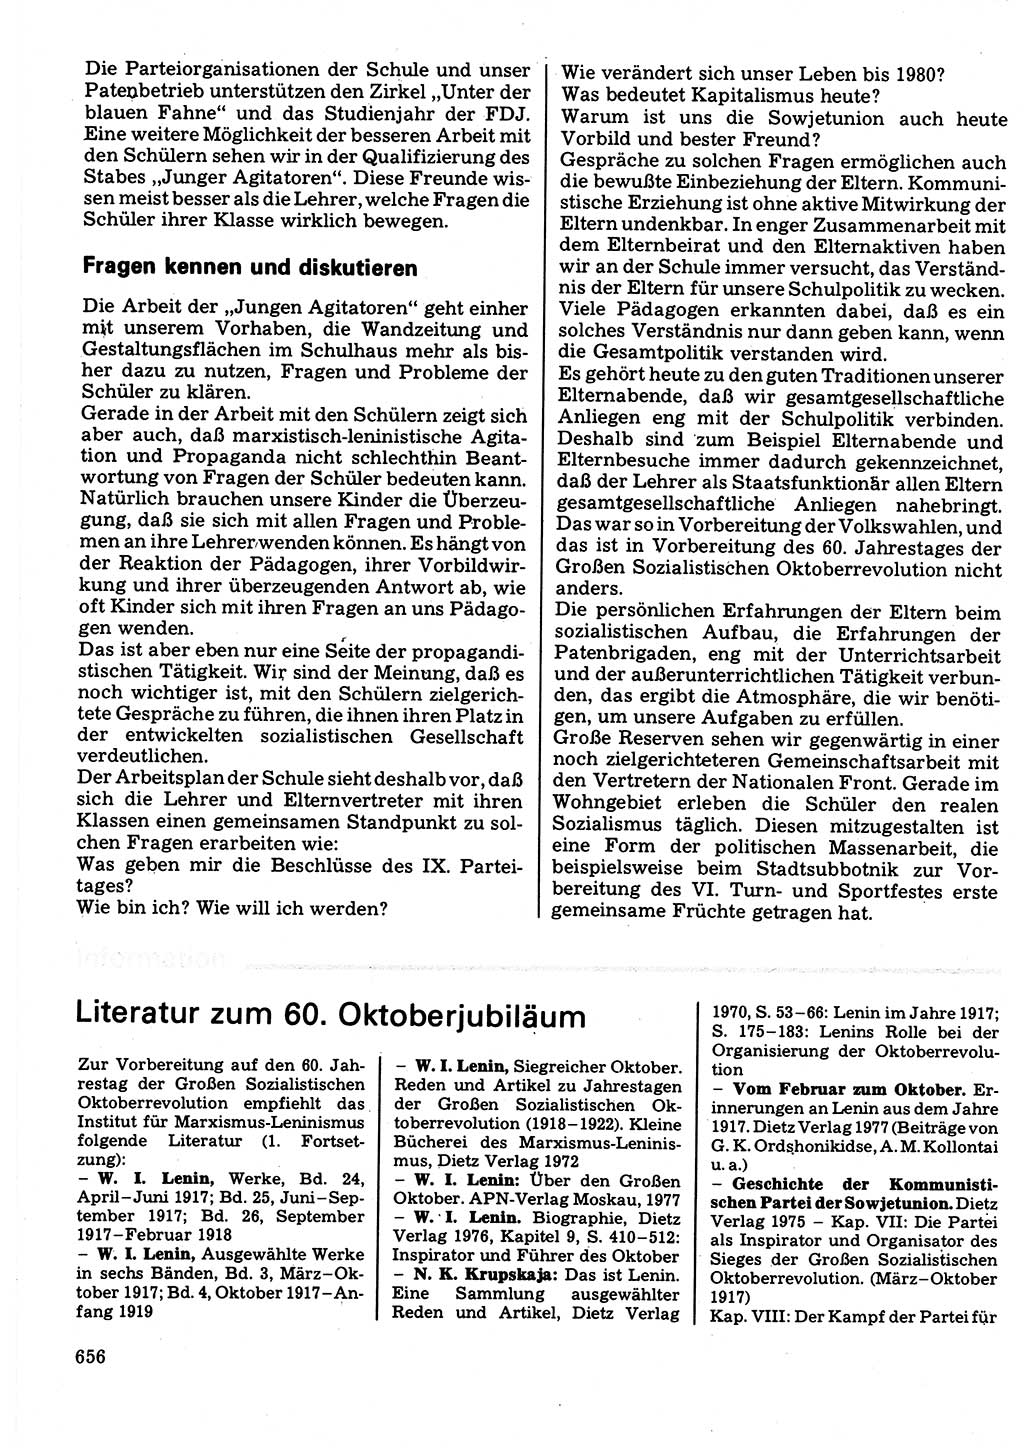 Neuer Weg (NW), Organ des Zentralkomitees (ZK) der SED (Sozialistische Einheitspartei Deutschlands) für Fragen des Parteilebens, 32. Jahrgang [Deutsche Demokratische Republik (DDR)] 1977, Seite 656 (NW ZK SED DDR 1977, S. 656)